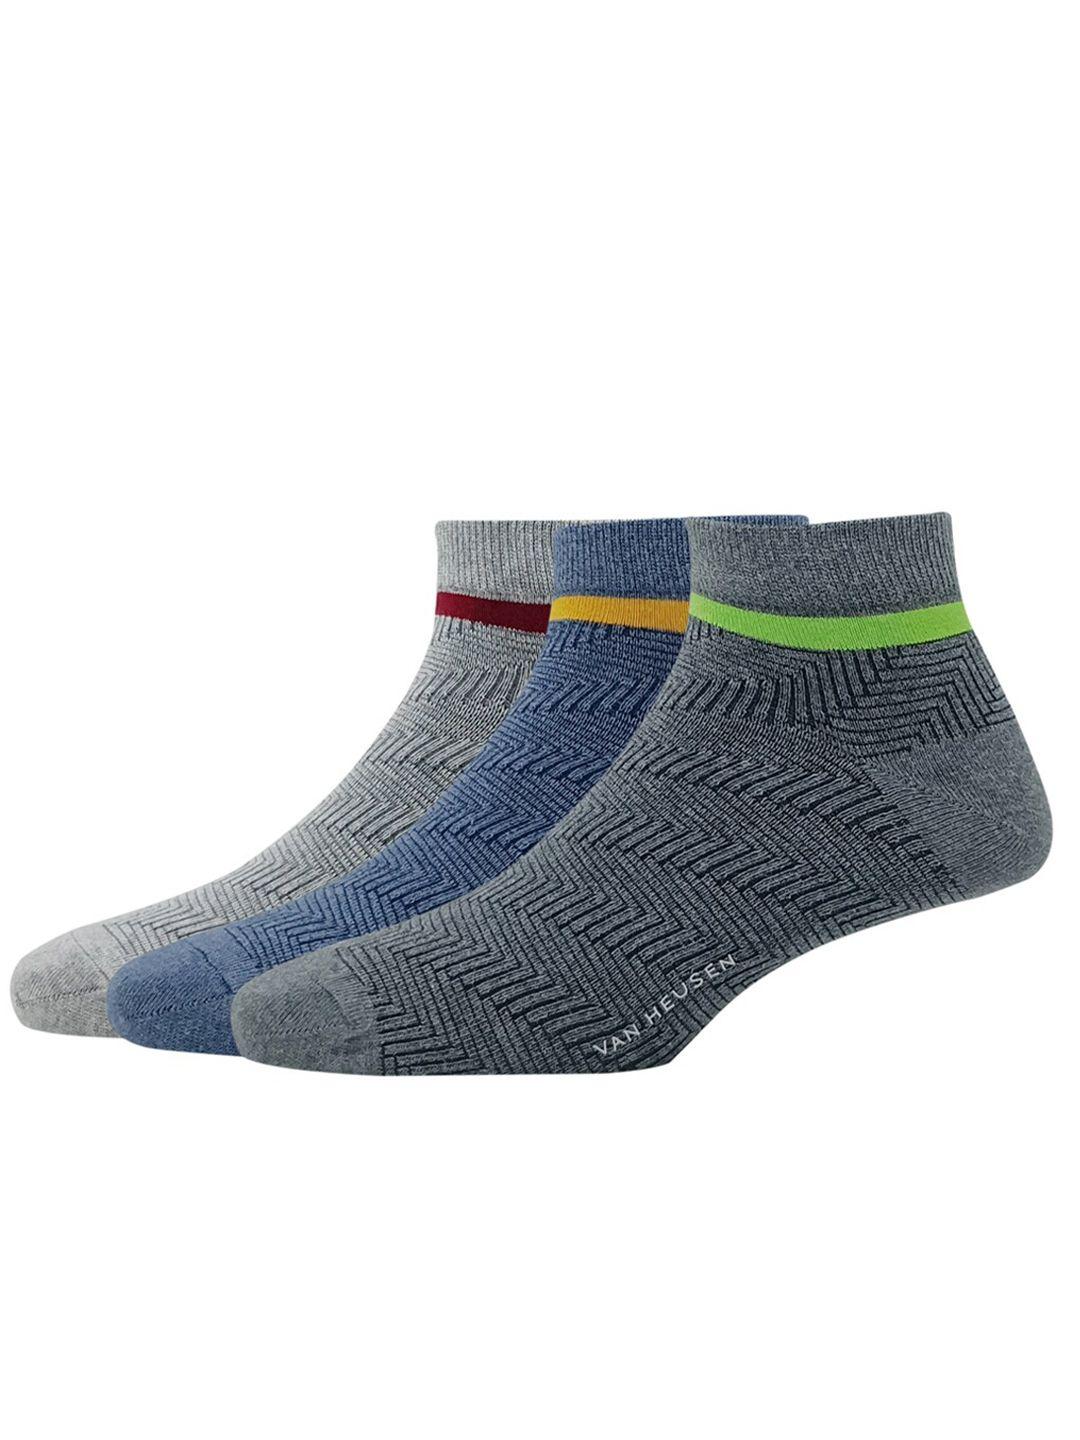 van heusen men pack of 3 patterned ankle length socks